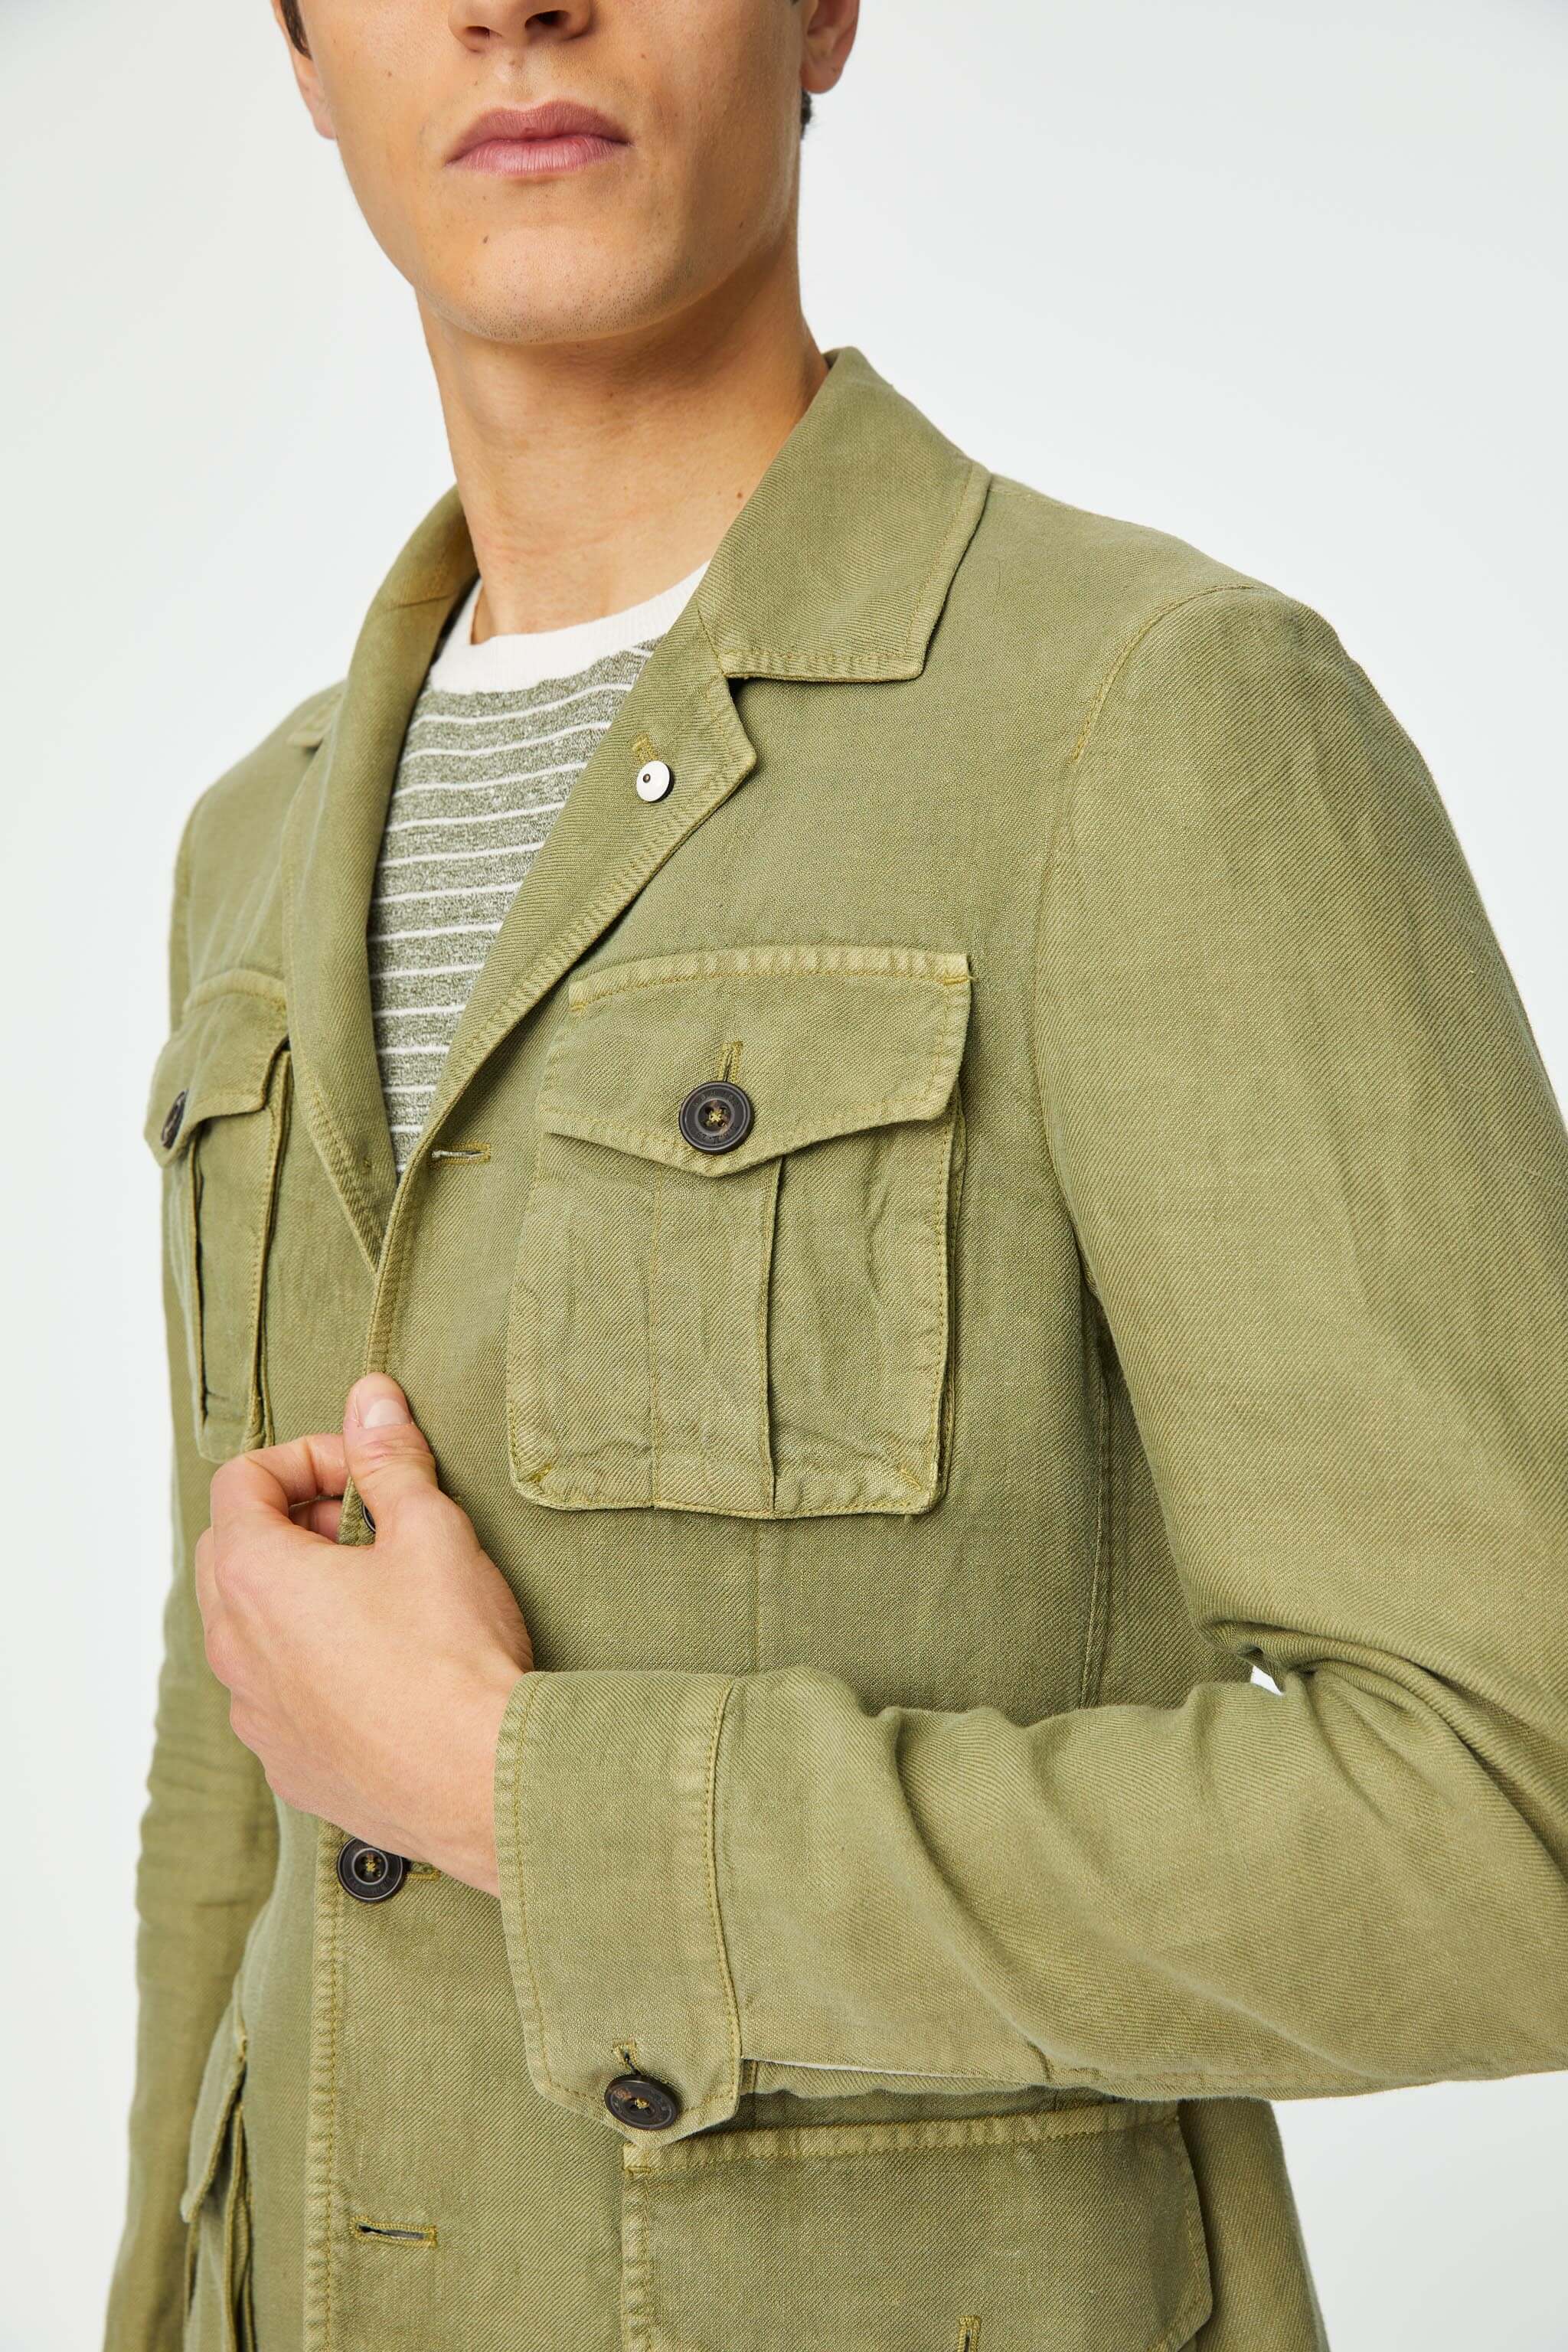 Garment-dyed SAHARA jacket in green